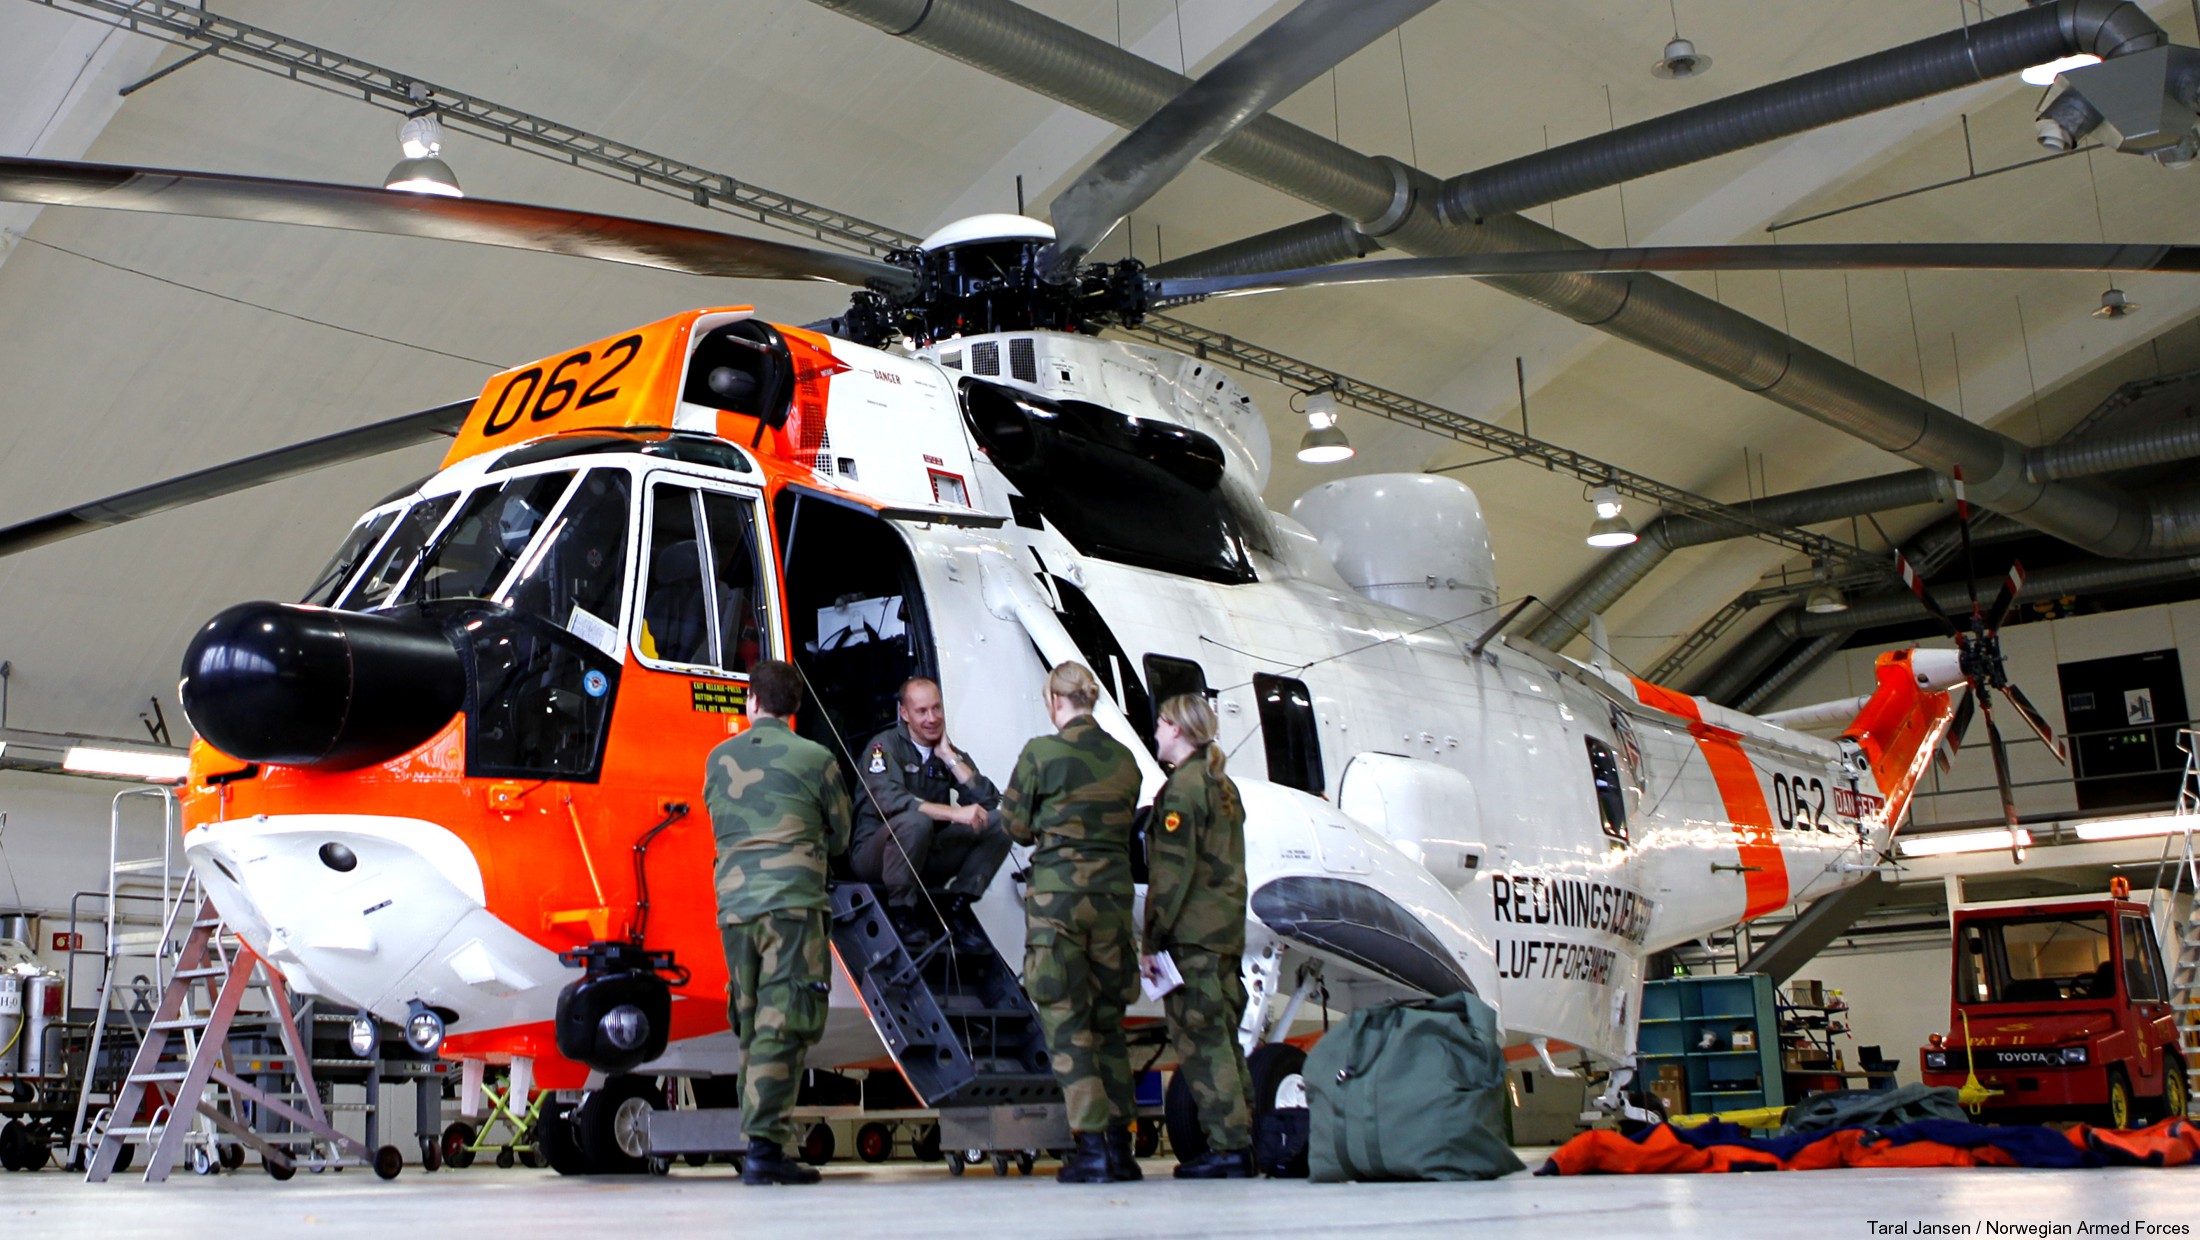 westland ws-61 sea king royal norwegian air force sar rescue 330 squadron skvadron luftforsvaret 062 08